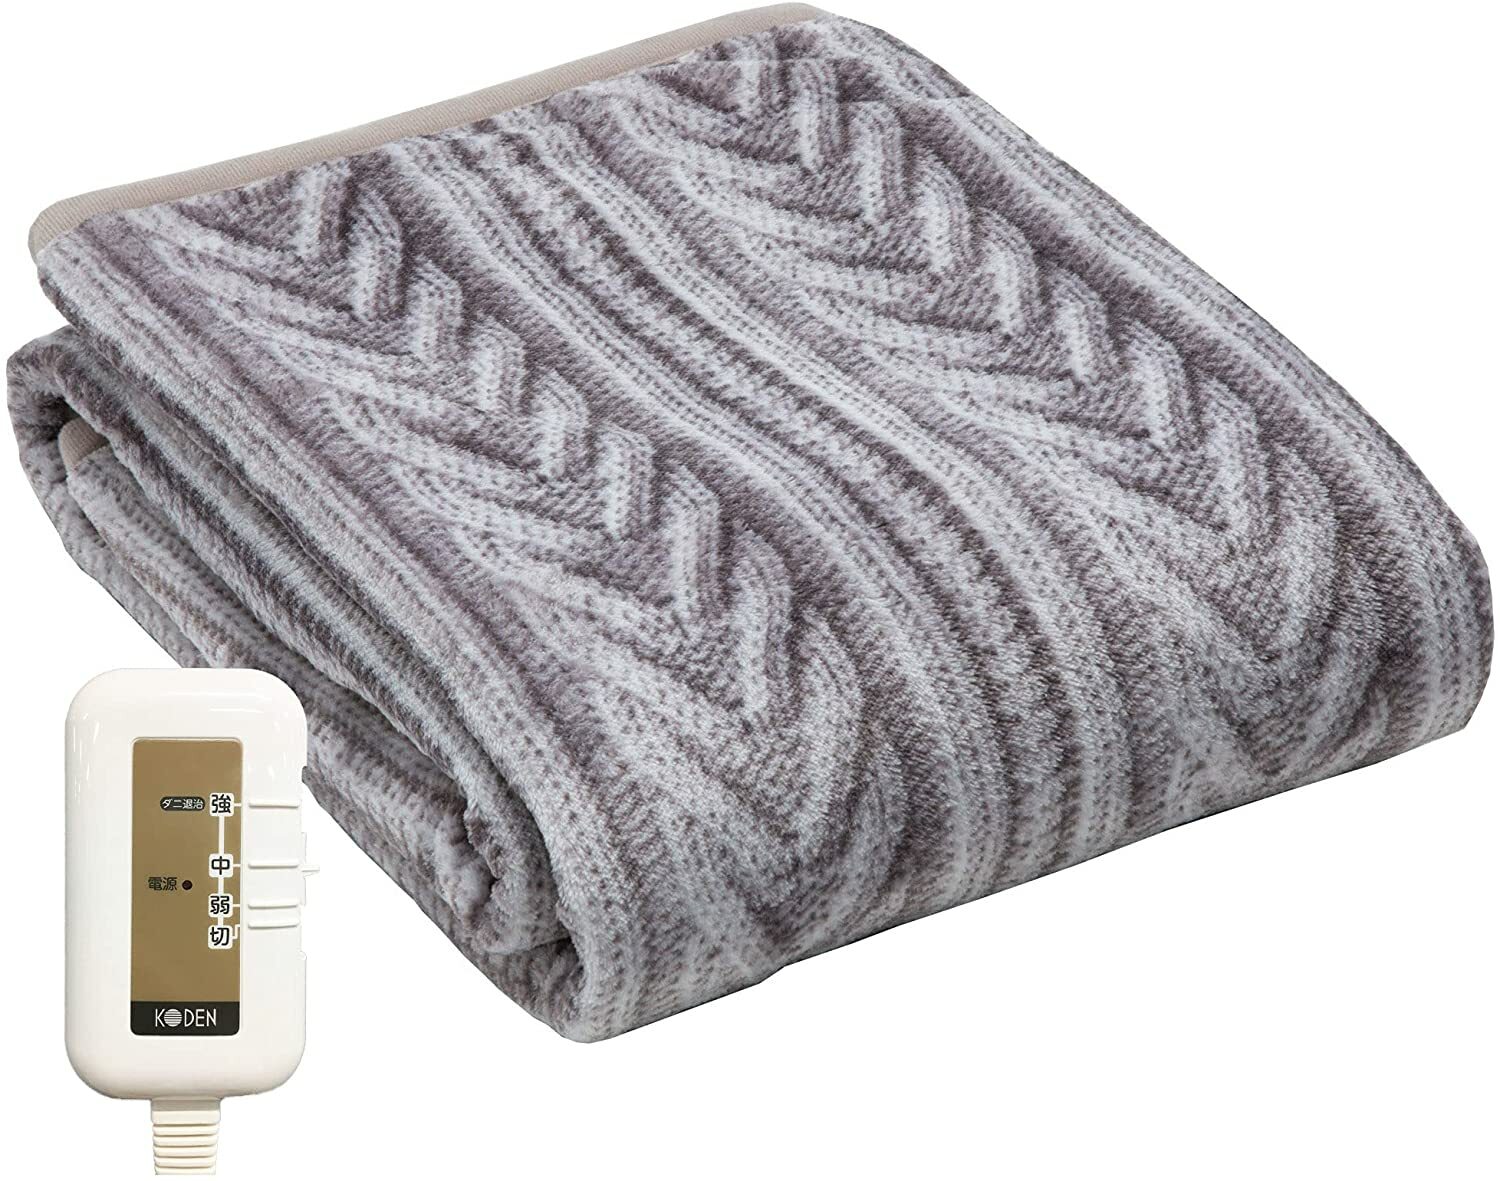  送料無料 広電 KODEN 電気毛布 敷き 140×80cm グレイ ニット柄 洗える 消臭機能 デオテックスライト 抗ウイルス加工 スライド温度調節